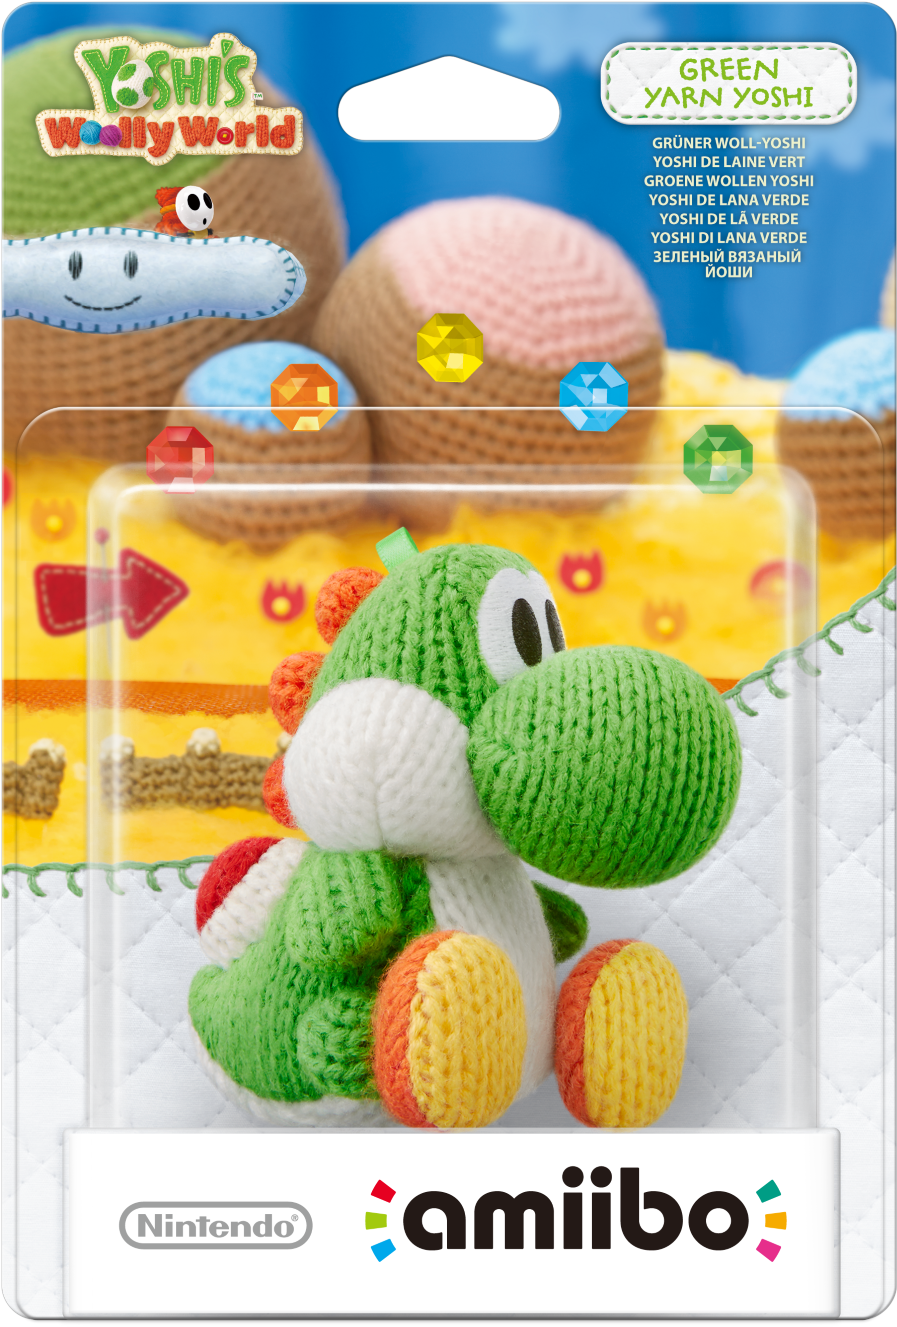 Gaming Adorable Nintendo Video Games Yoshi Wii U Packaging - Green Yarn Yoshi Amiibo (1080x1503), Png Download